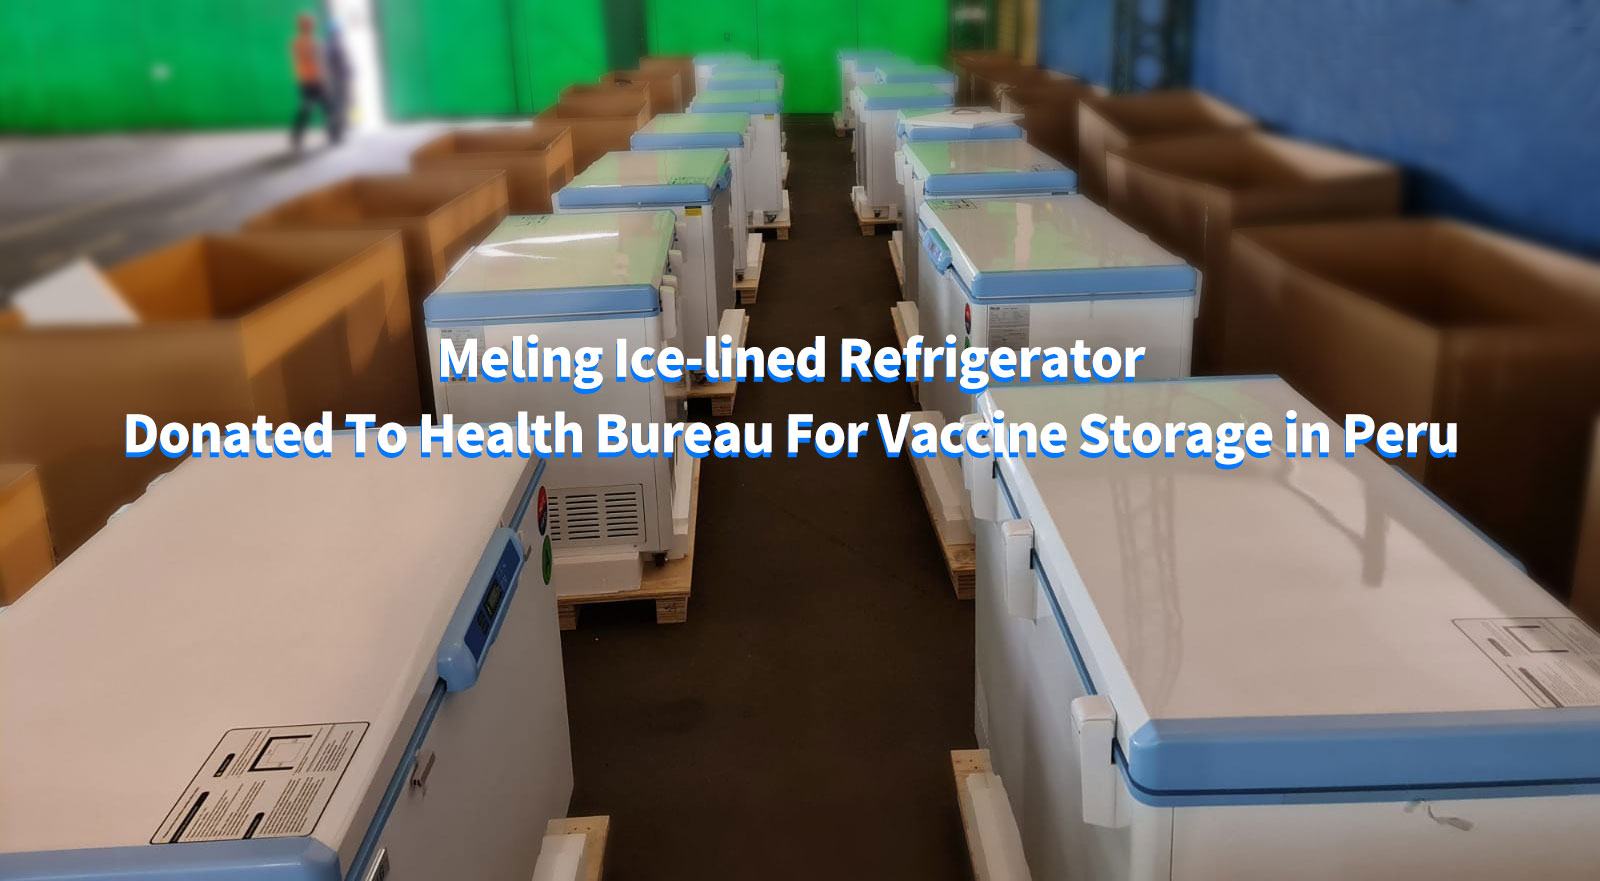 Холодильник со льдом Meling передан в дар Бюро здравоохранения для хранения вакцин в Перу
